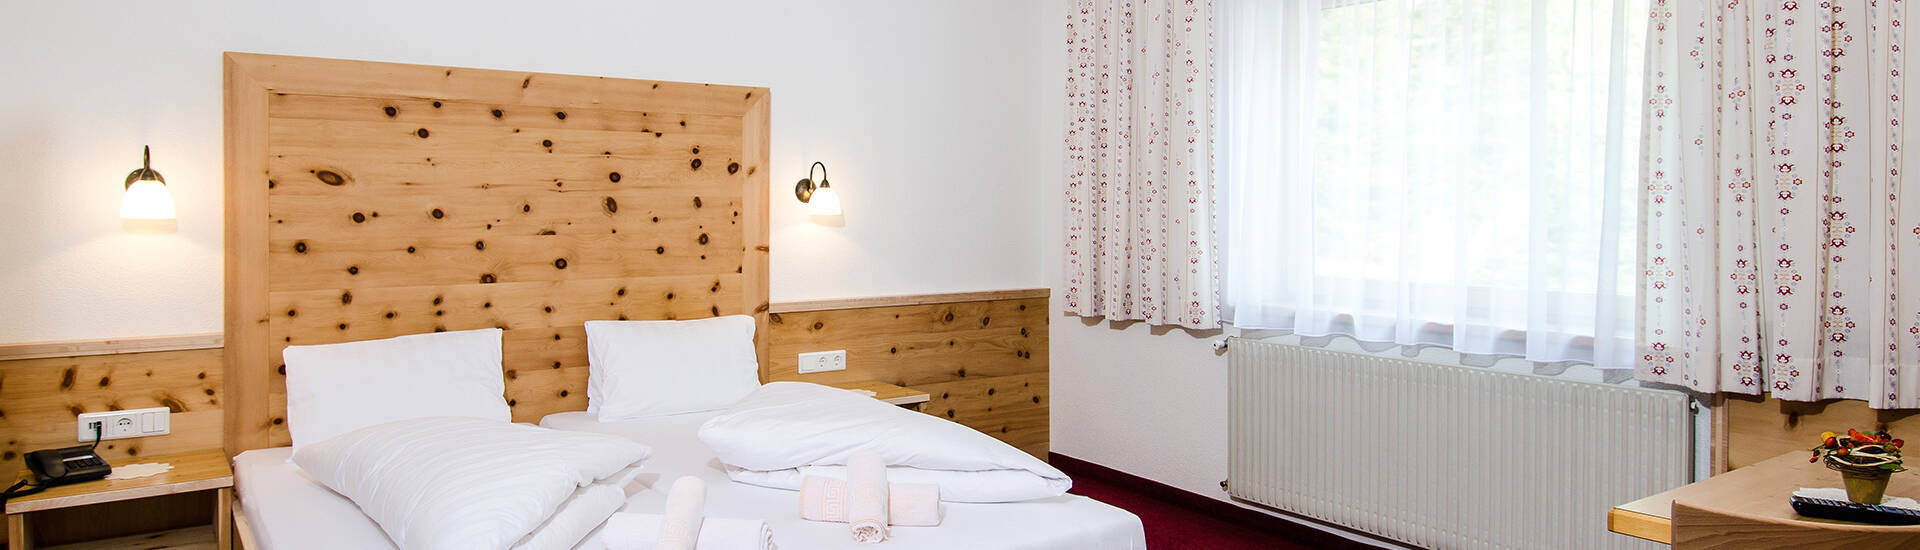  Zimmer im Hotel Sonnenhof in Ischgl/Mathon